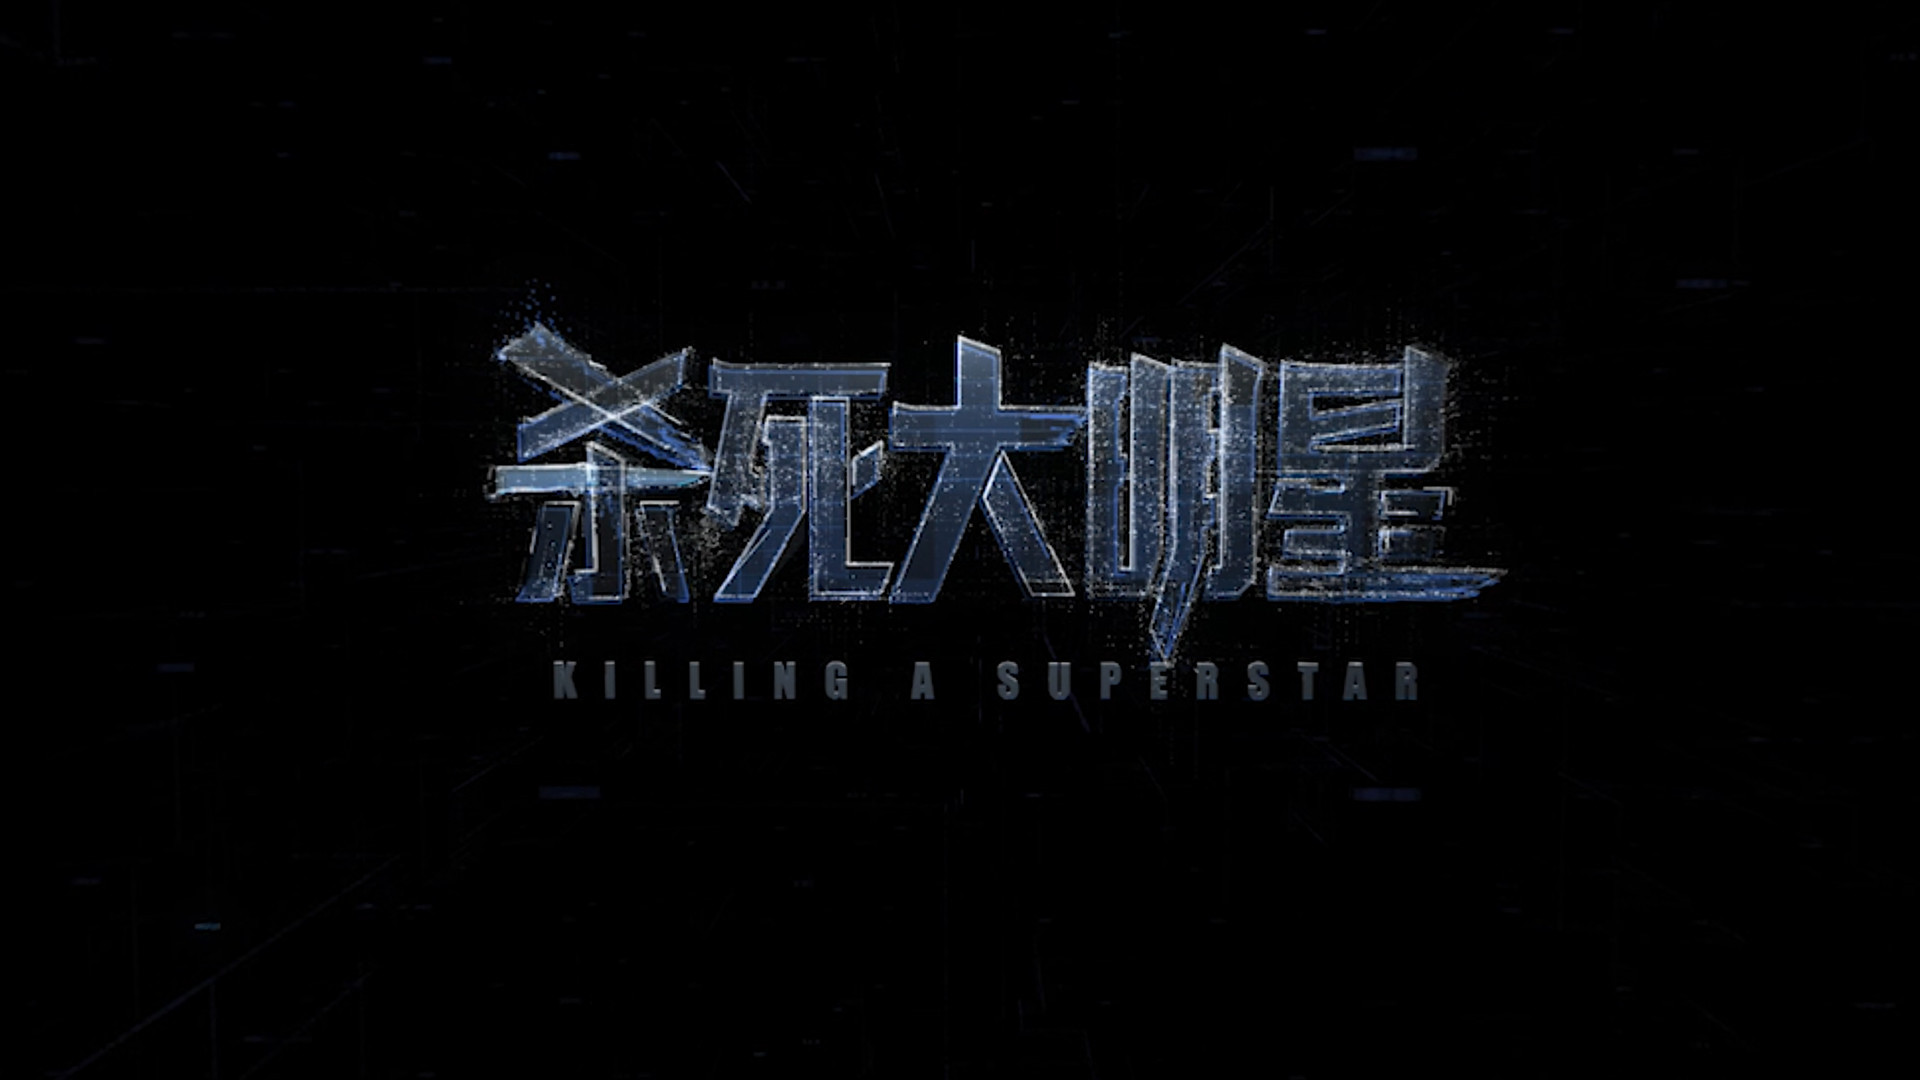 KILLING A SUPERSTAR